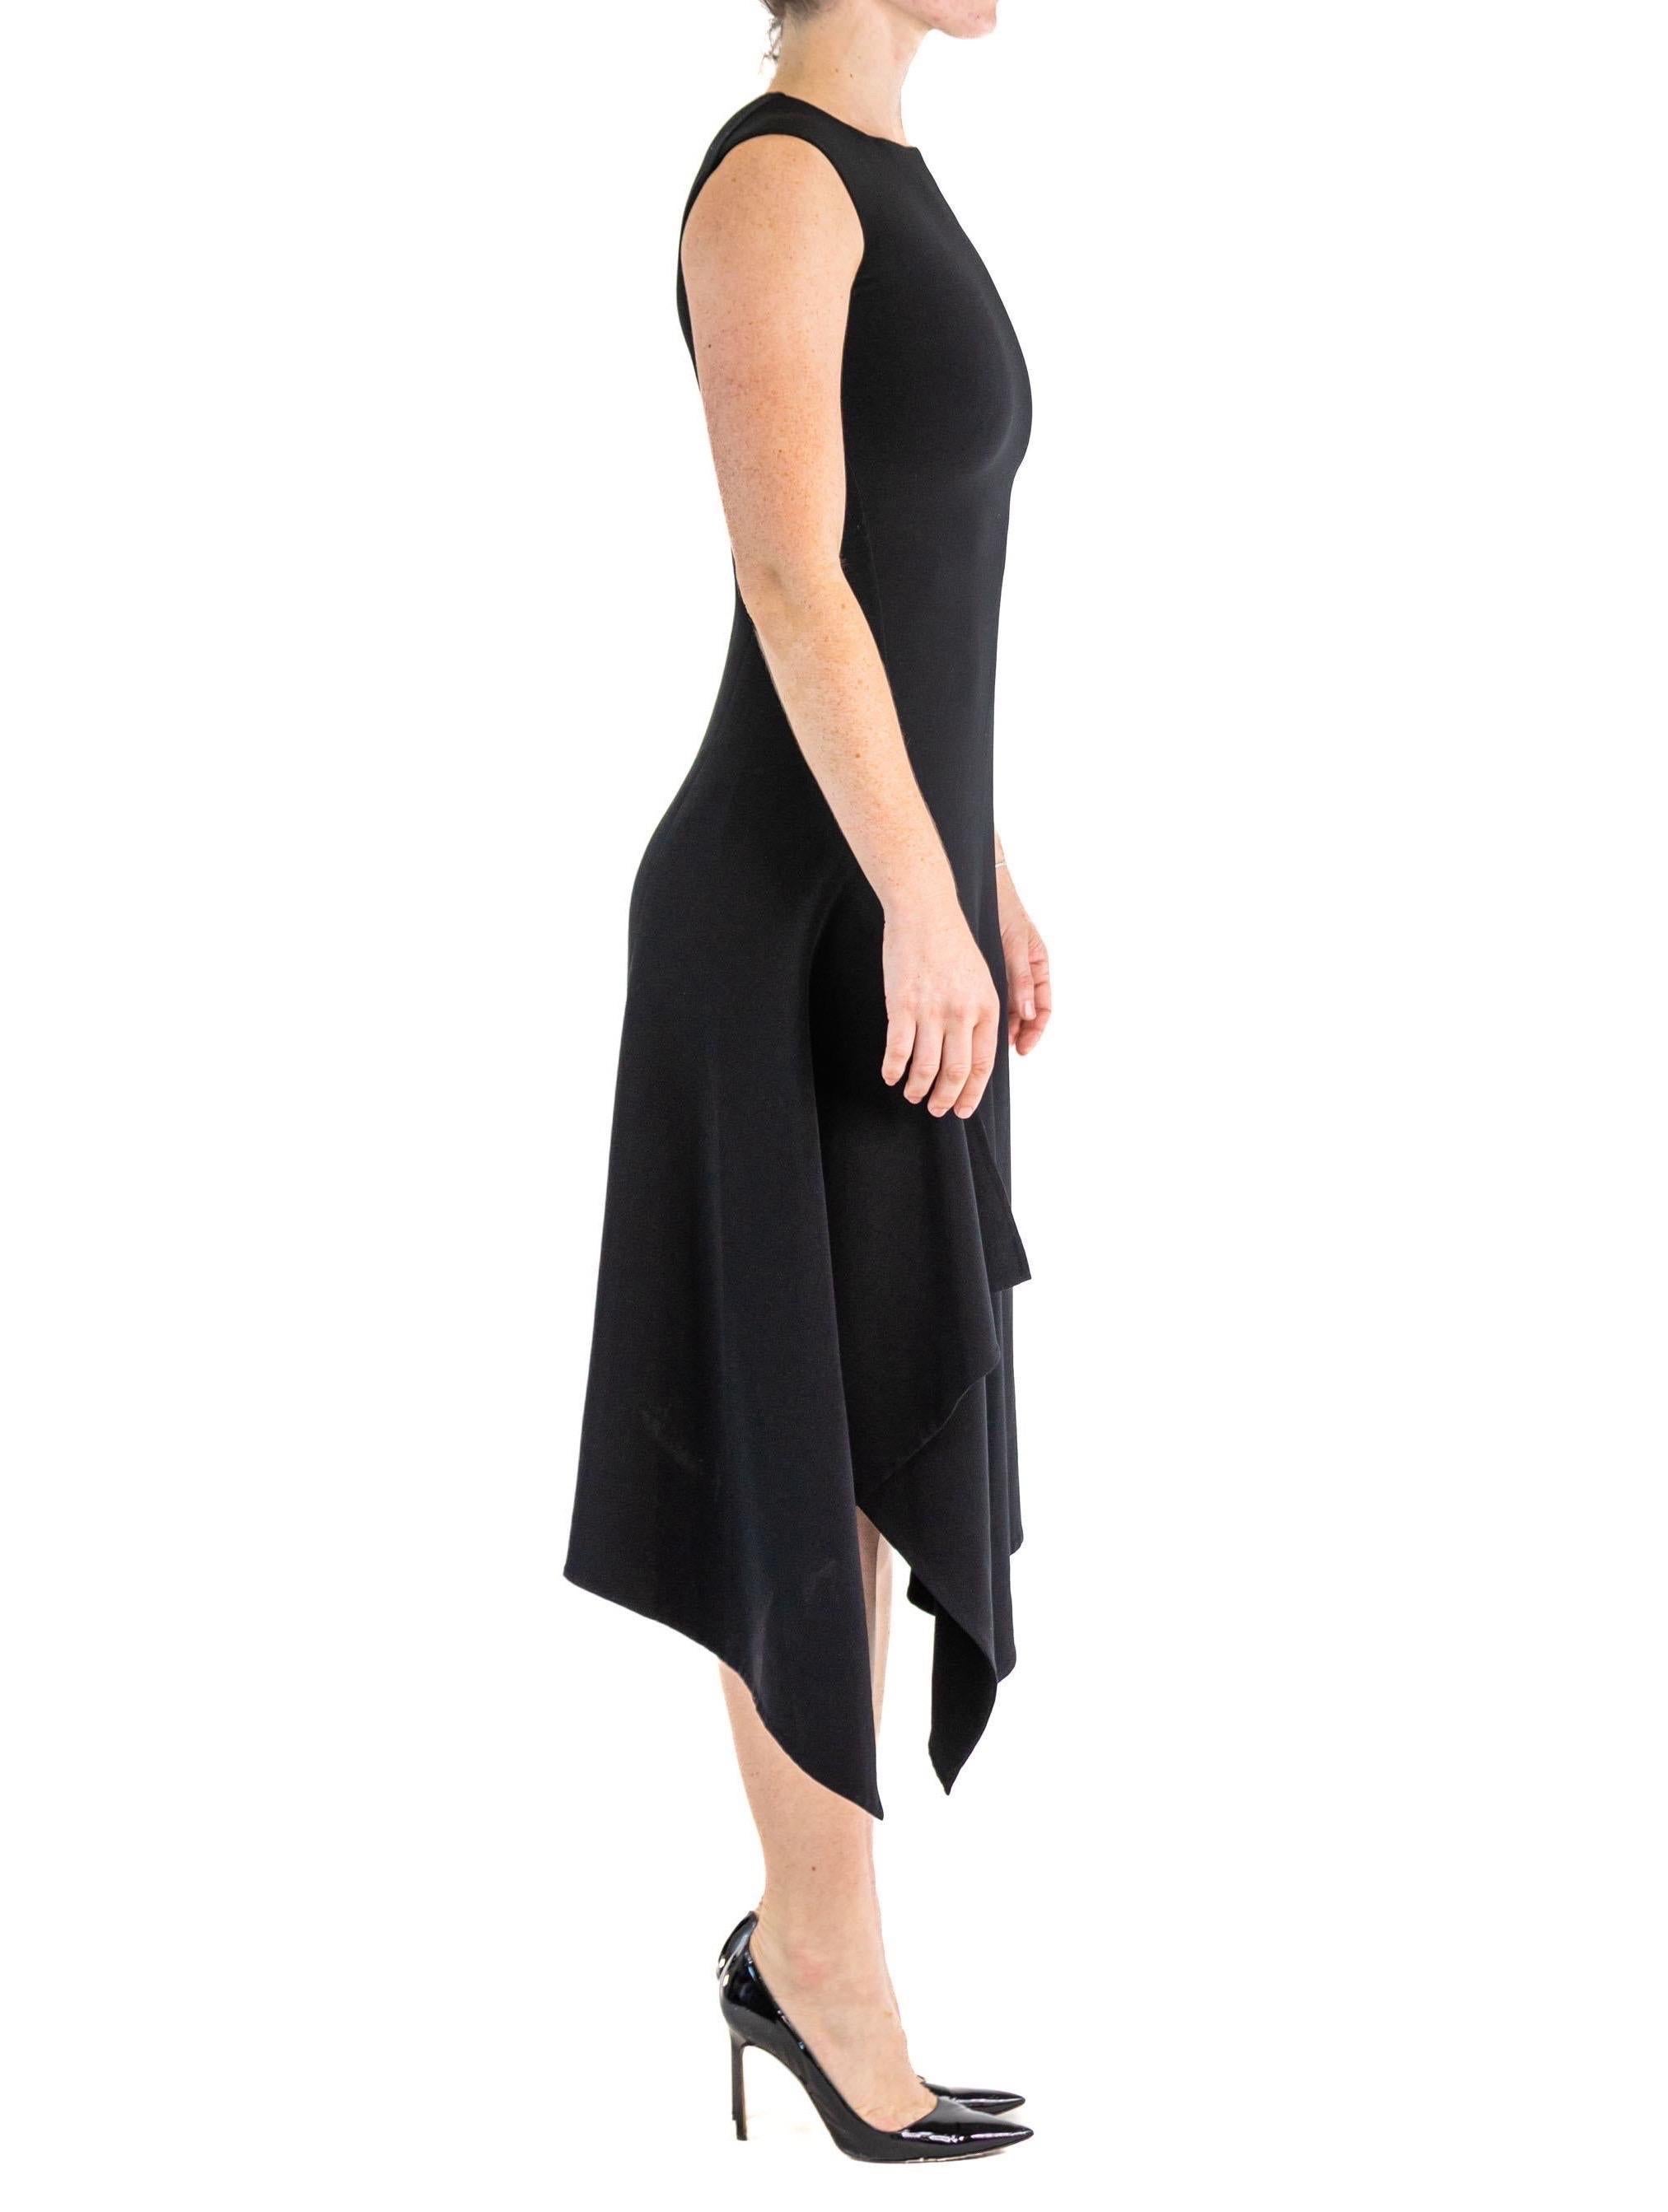 2000S DONNA KARAN Black Wool Blend Stretch High Side Slit Modernist Gown For Sale 1